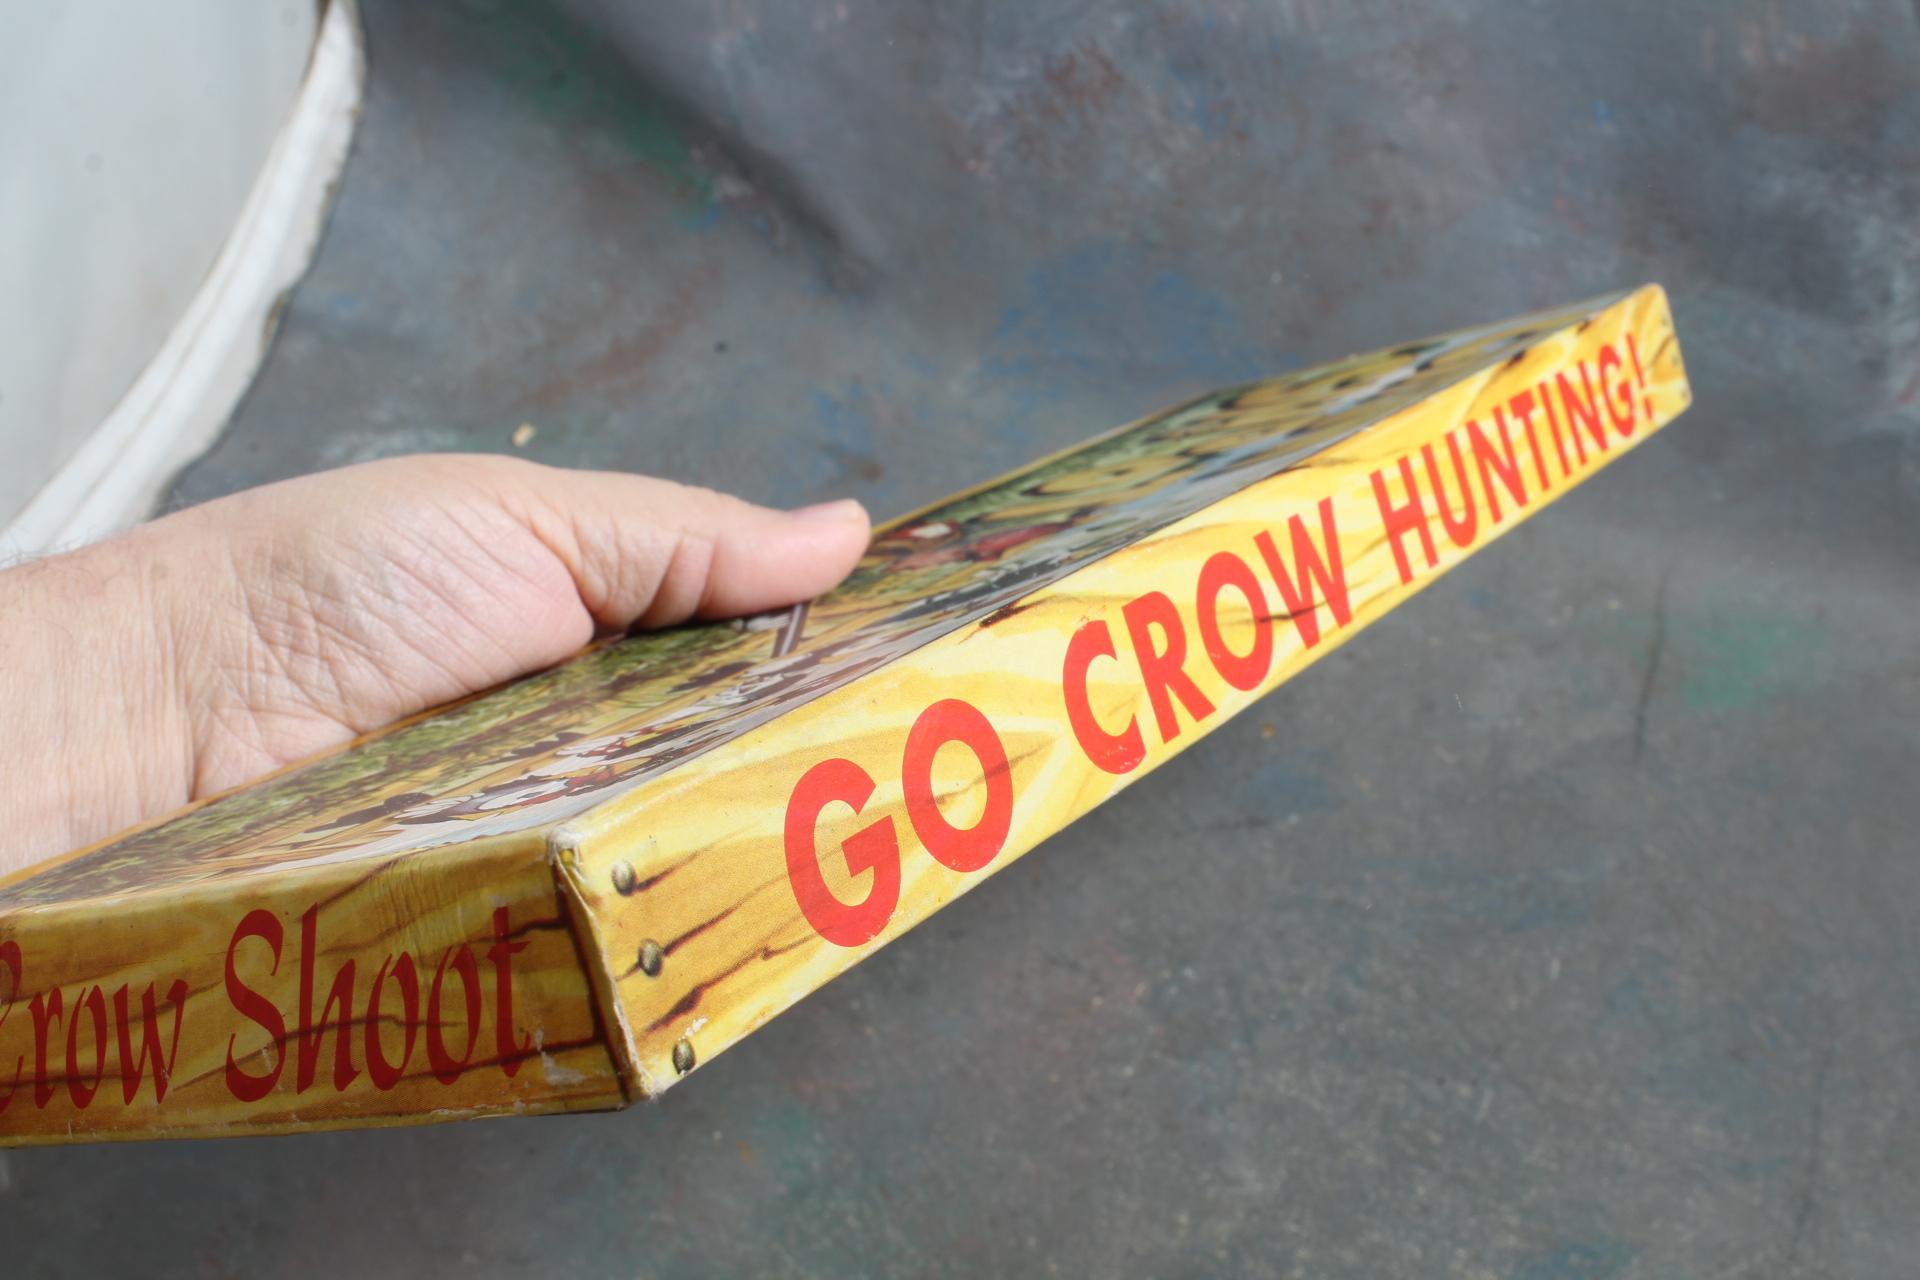 Vintage Antique Cardboard Jaymar Crow Shoot Target Game in Original Box